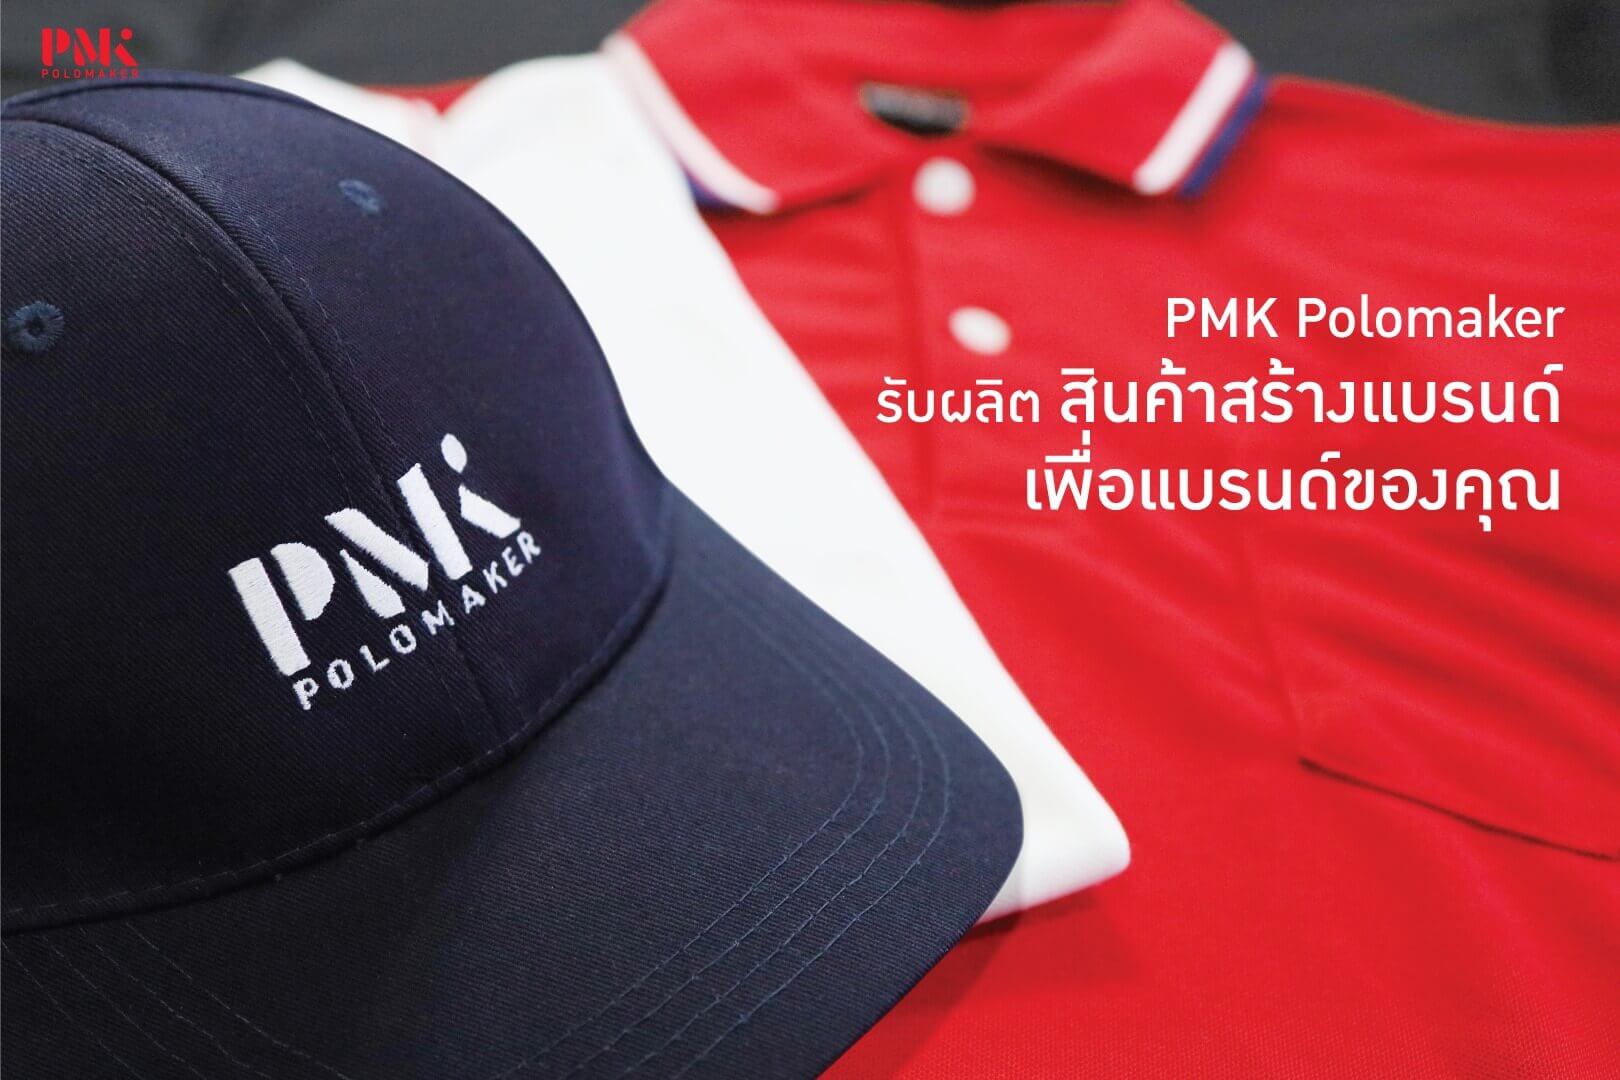 PMK Polomaker โรงงานผลิตเสื้อ - รับผลิตถุงผ้าลดโลกร้อน